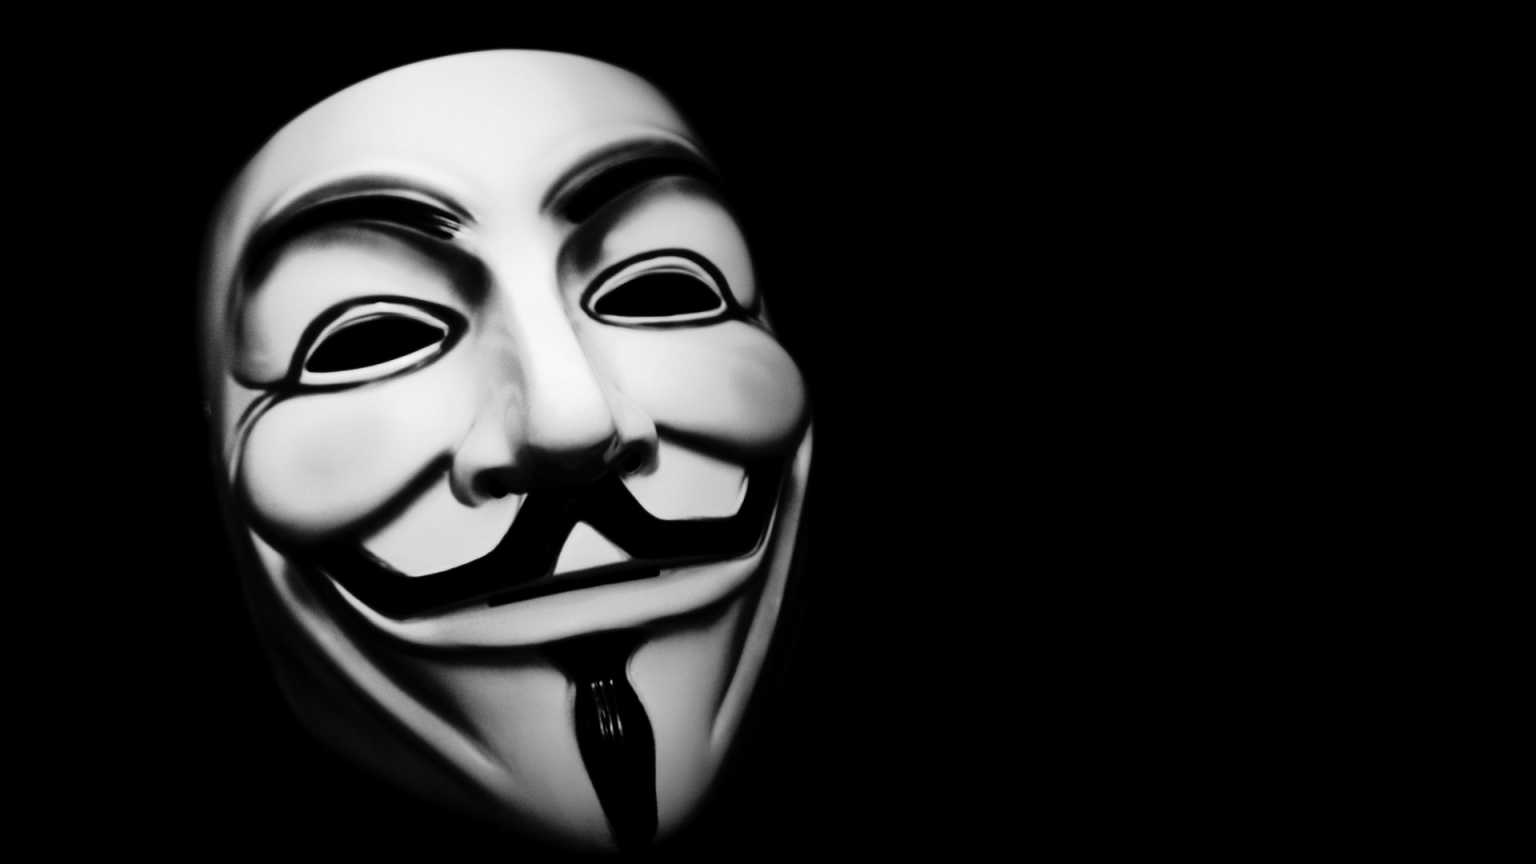 Vendetta Mask for 1536 x 864 HDTV resolution